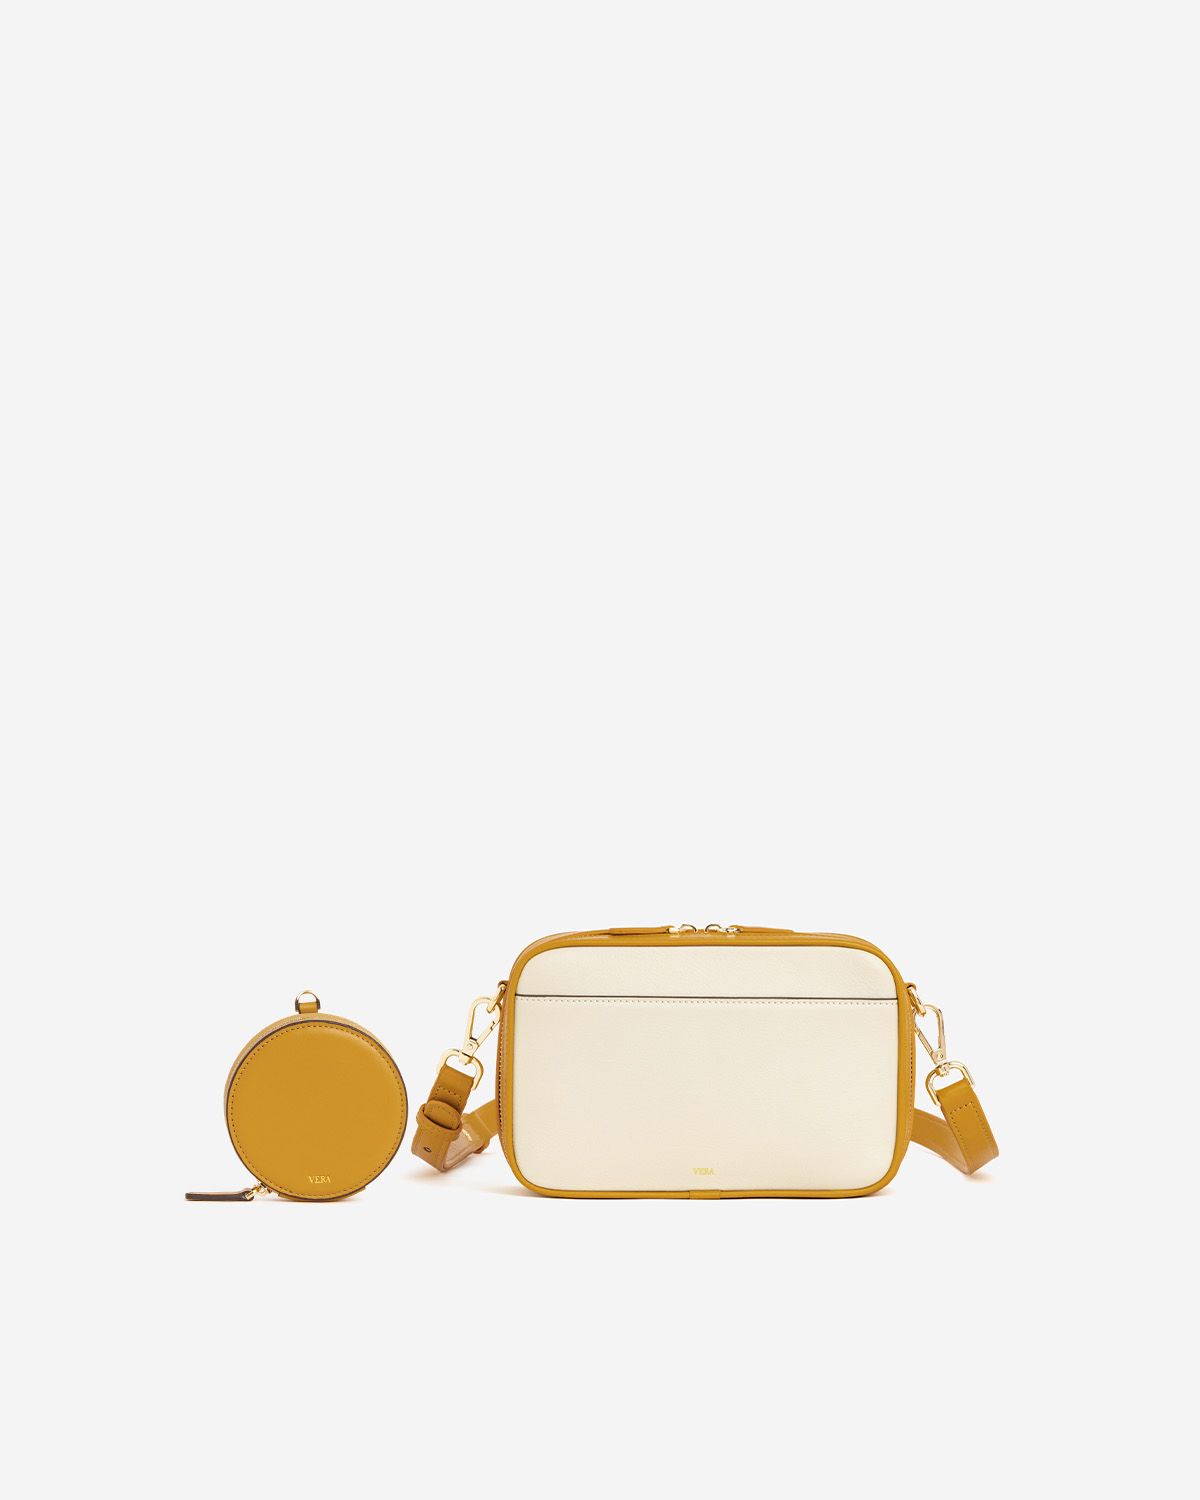 กระเป๋าสะพายข้างหนังแท้ VERA Snack Box Leather Crossbody bag สี Lemon Tart